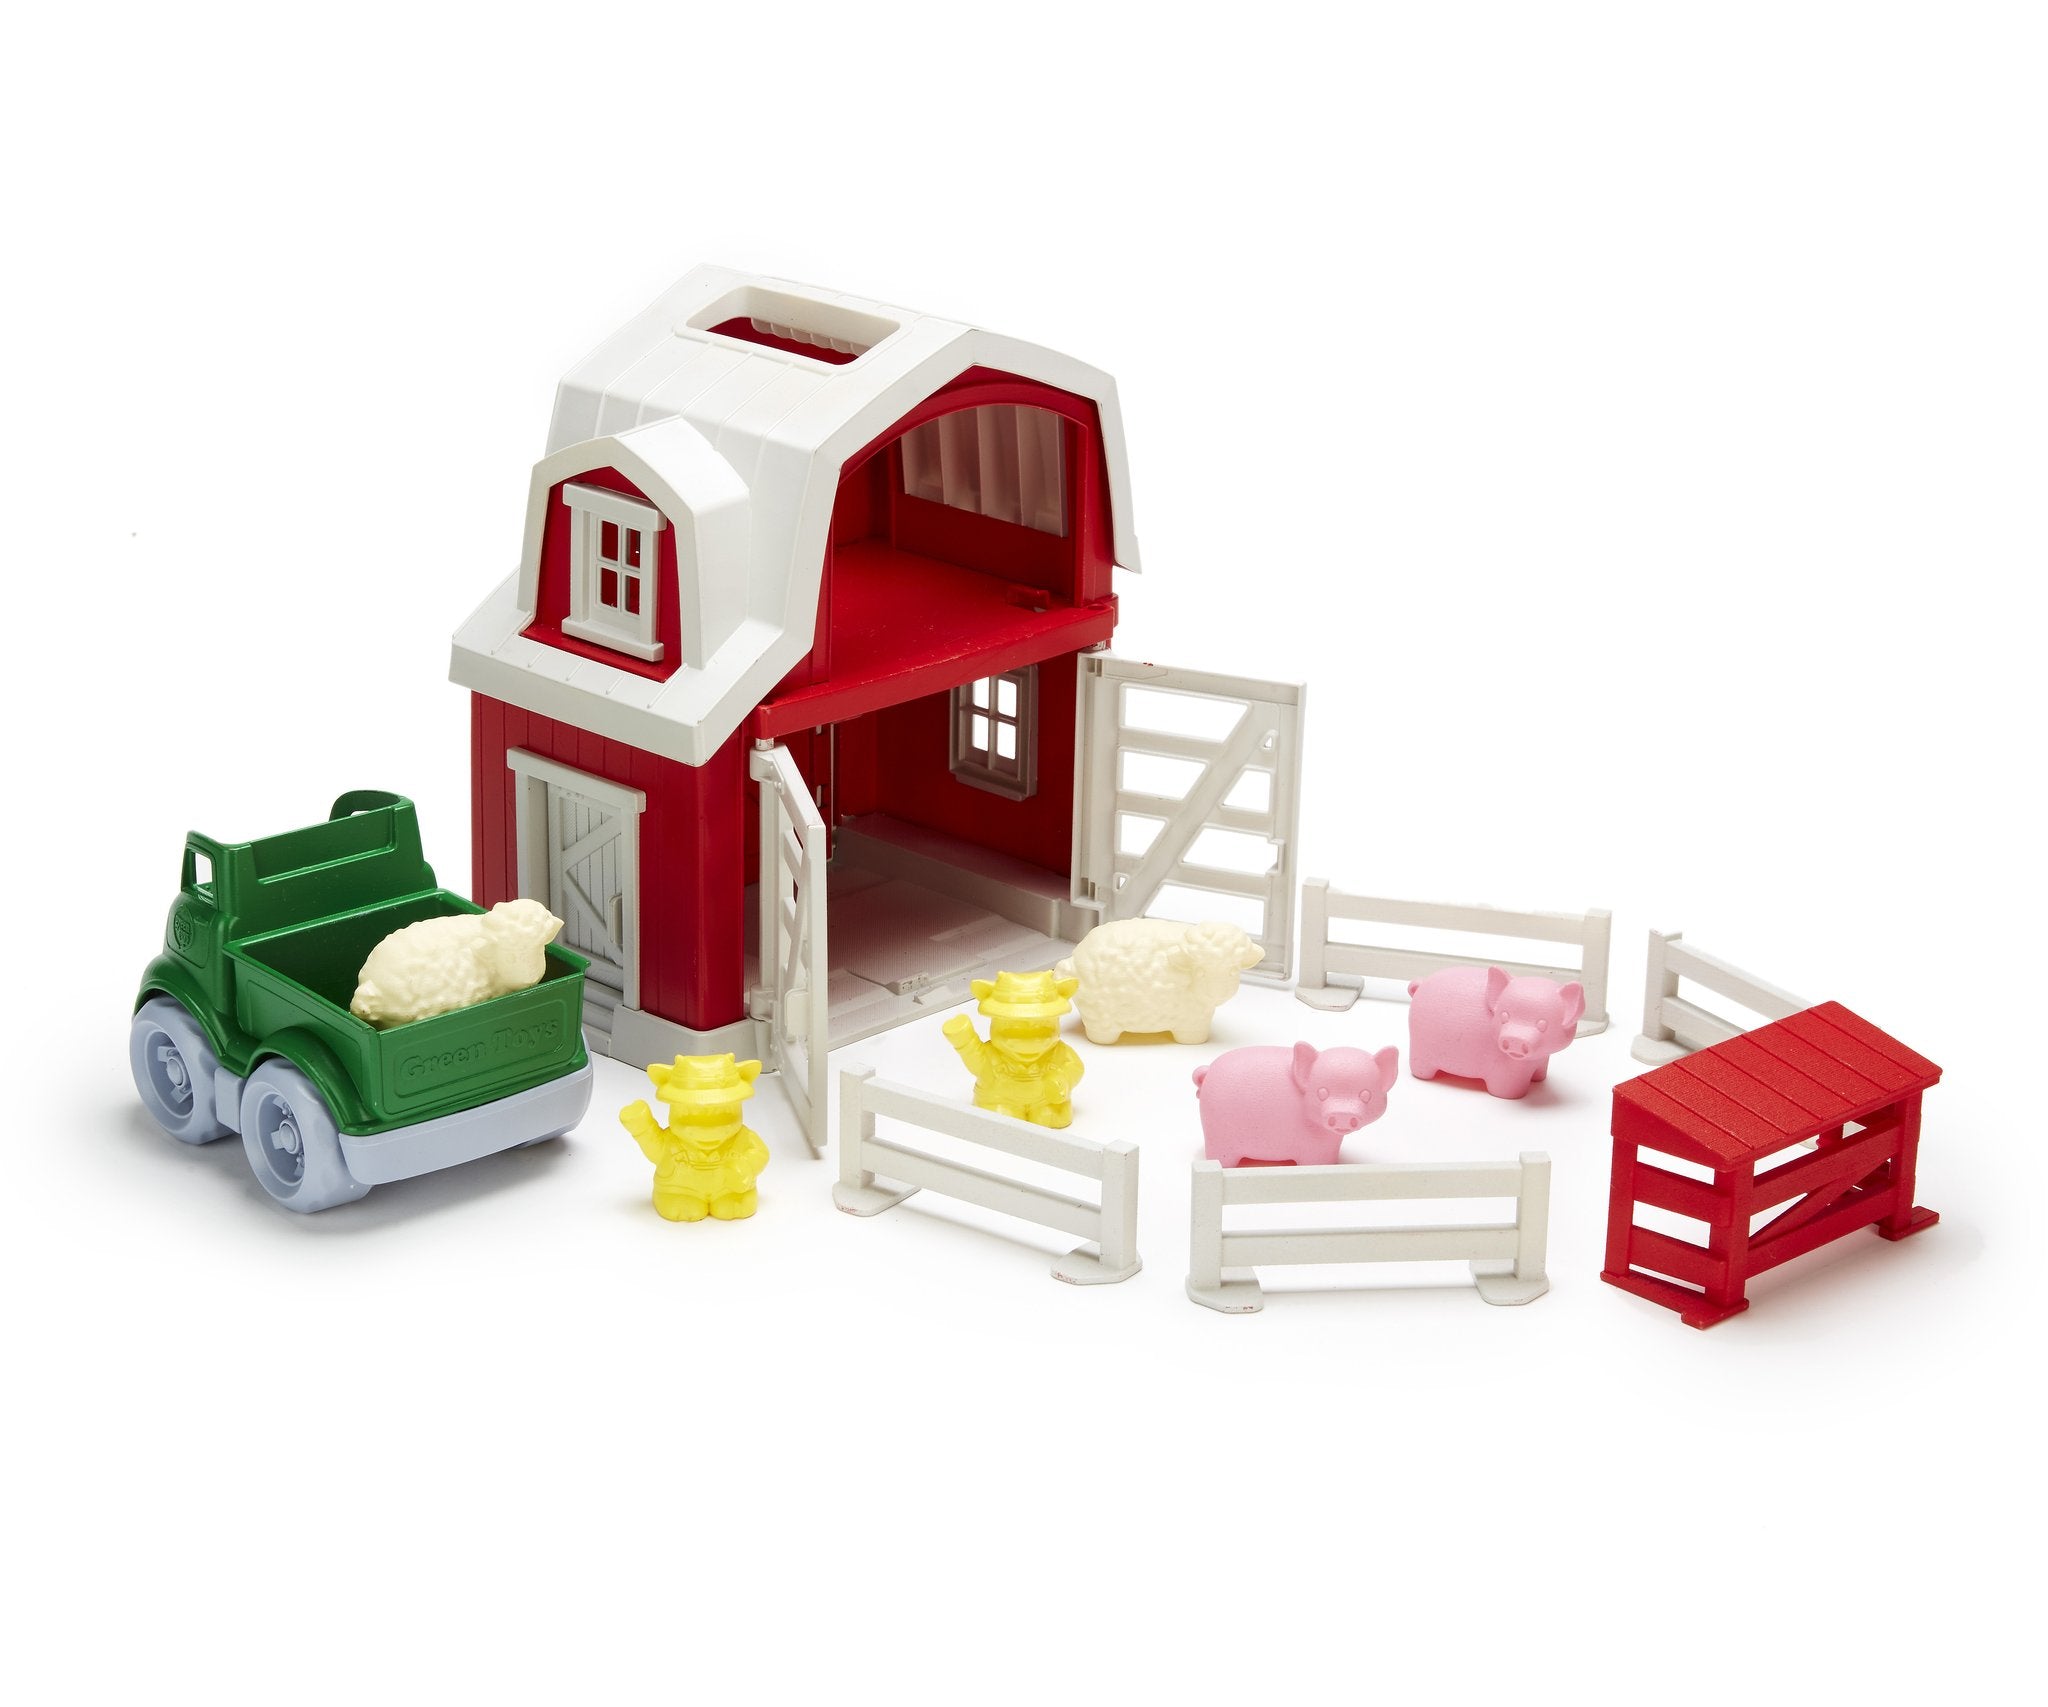 Green Toys - Farm Playset    